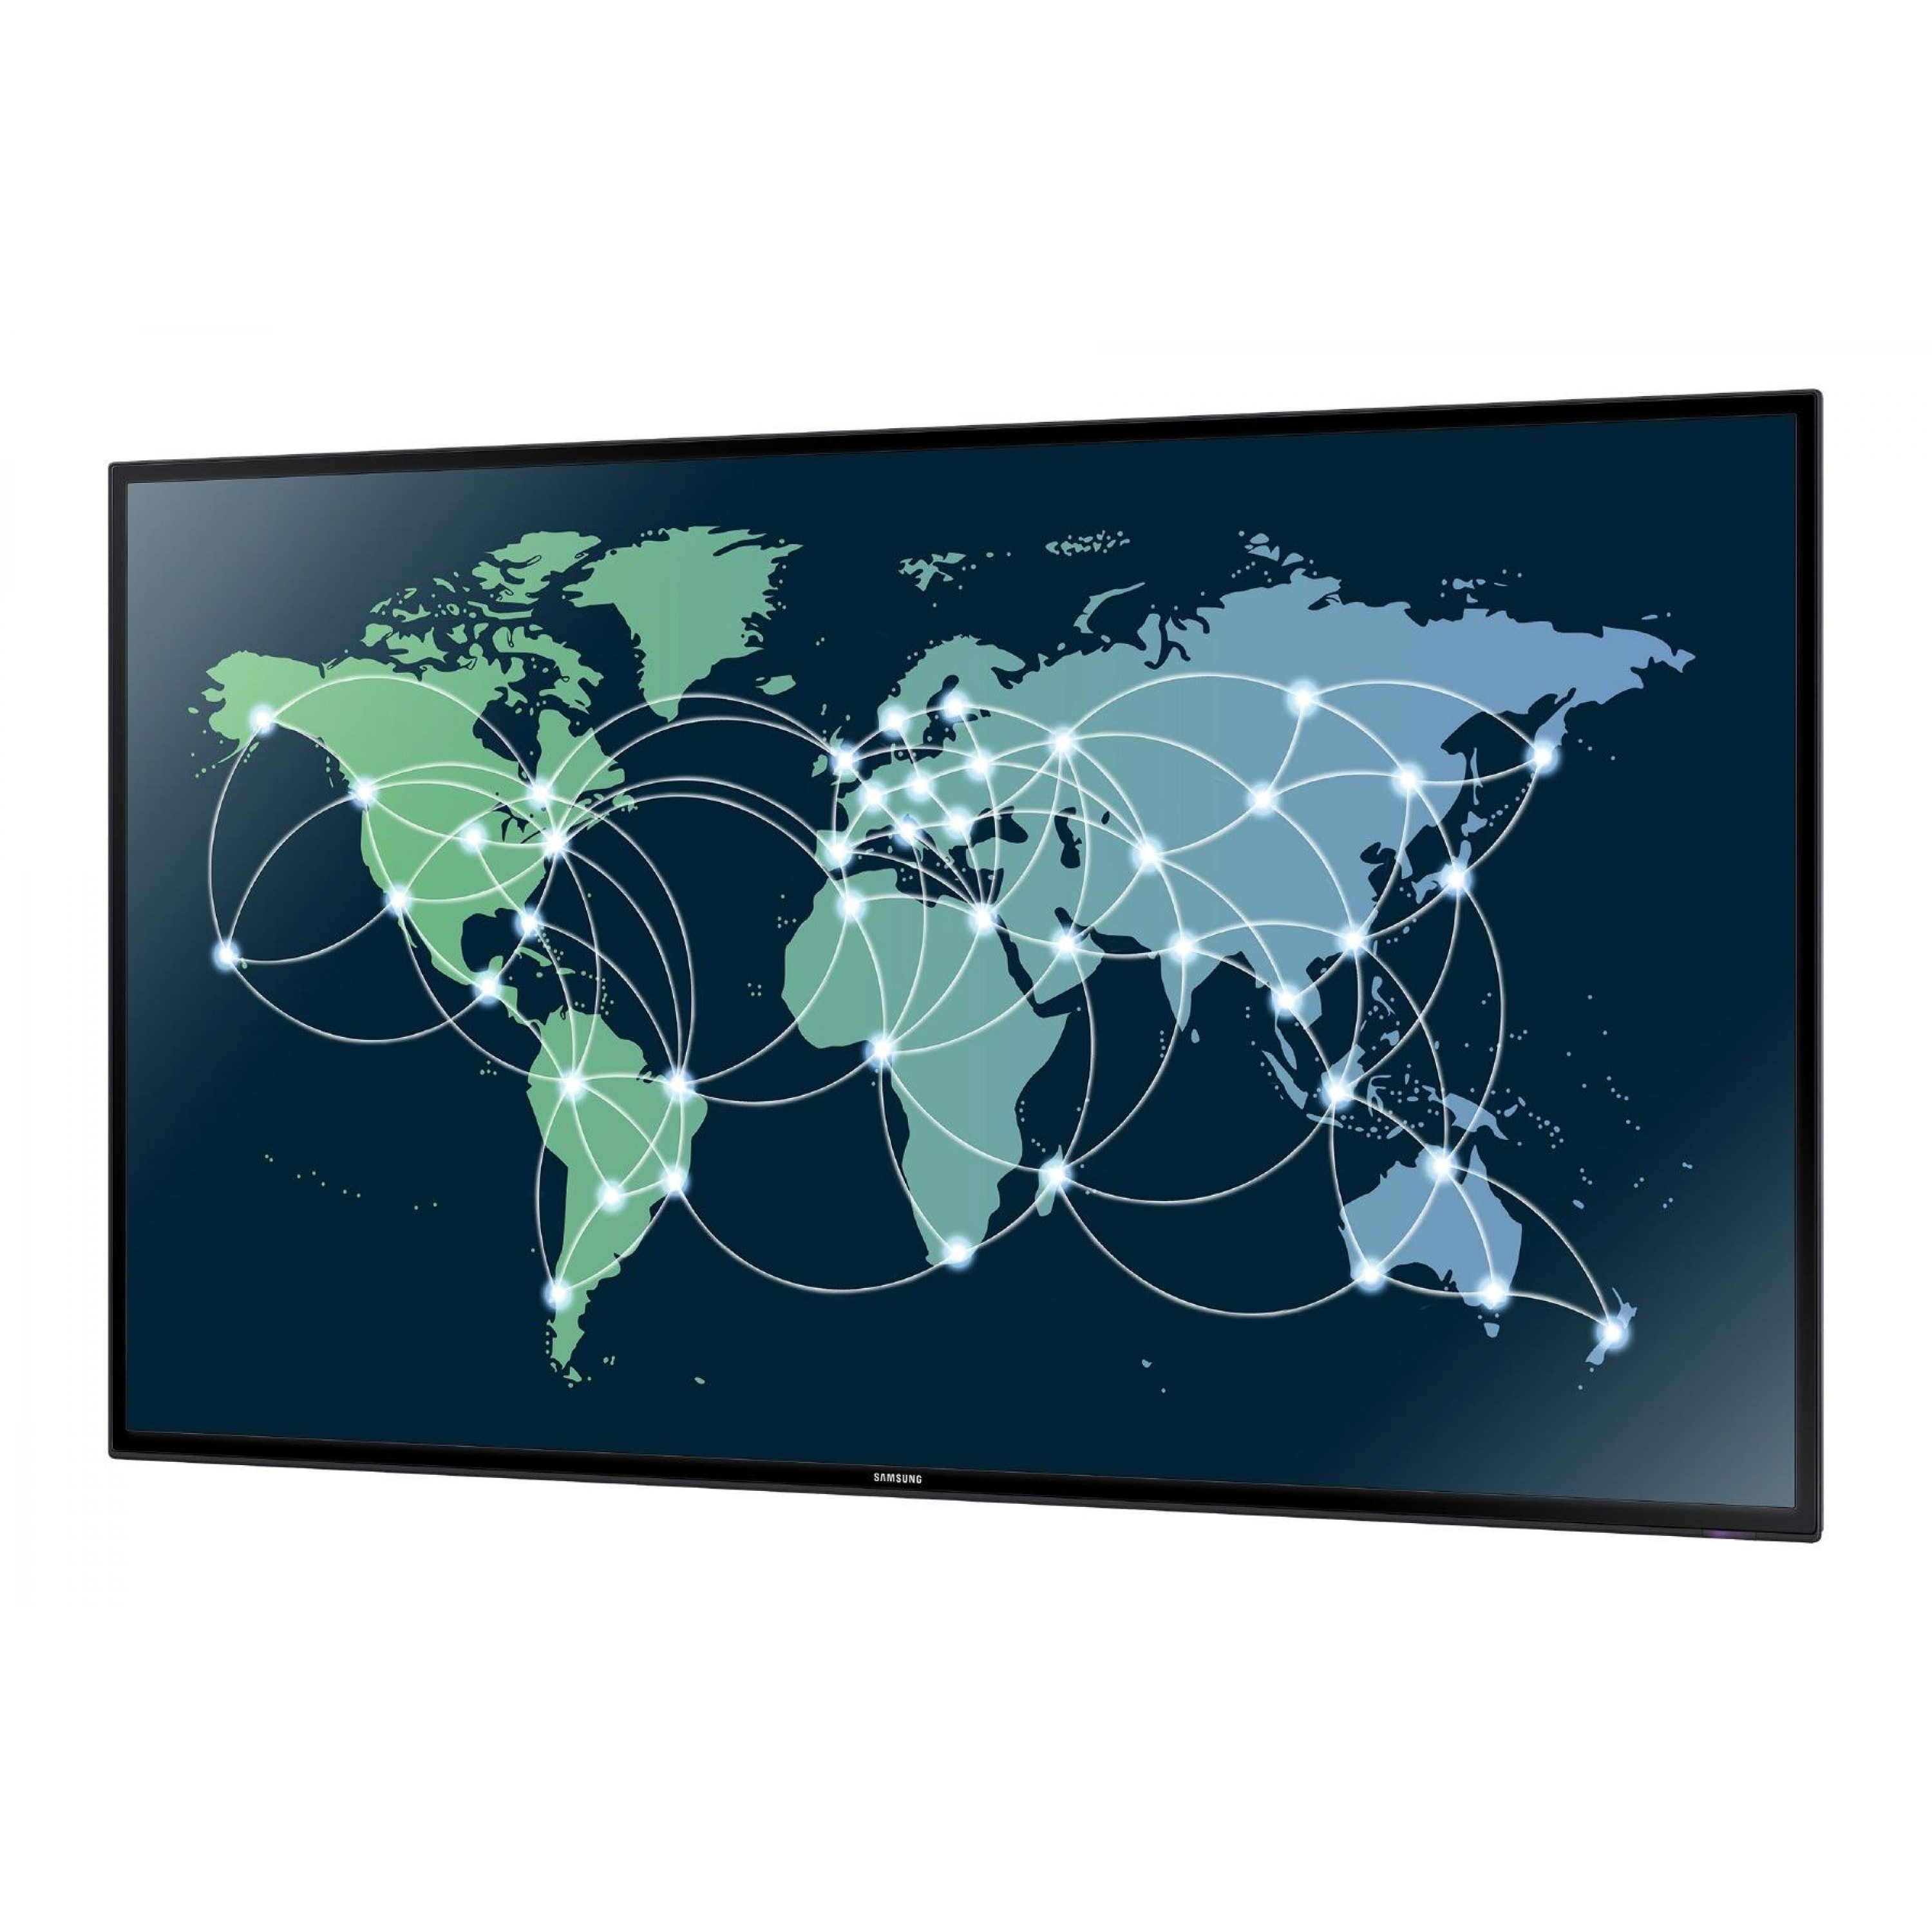 Сайты интернета с картами. Всемирная сеть на мировой карте. Карта глобального интернета. Мировая сеть интернет карта.